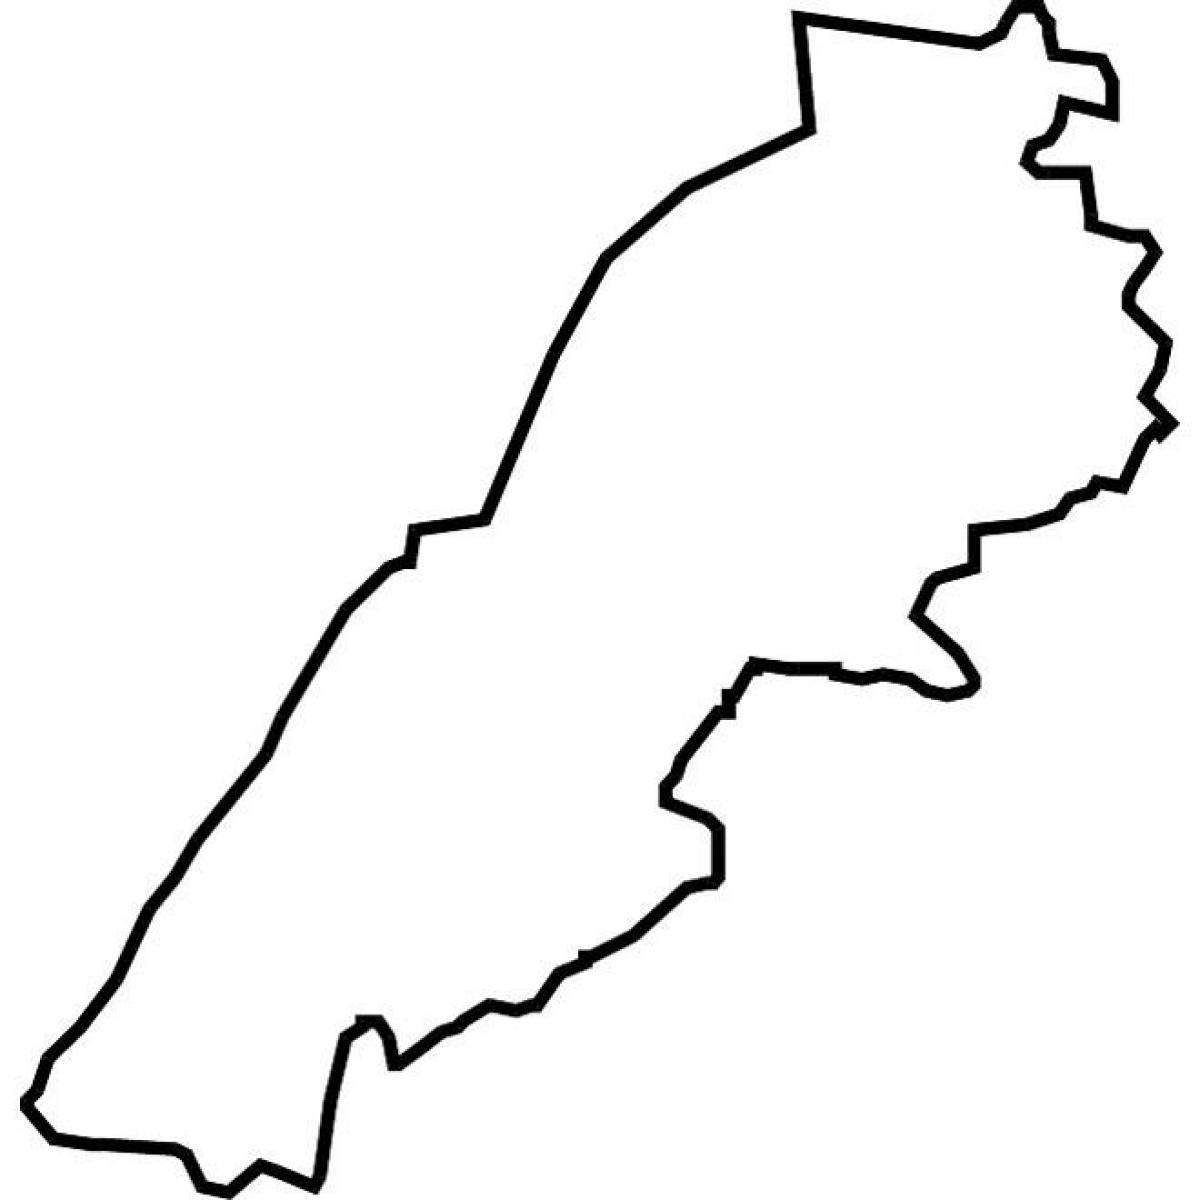 térkép Libanon vektoros térkép